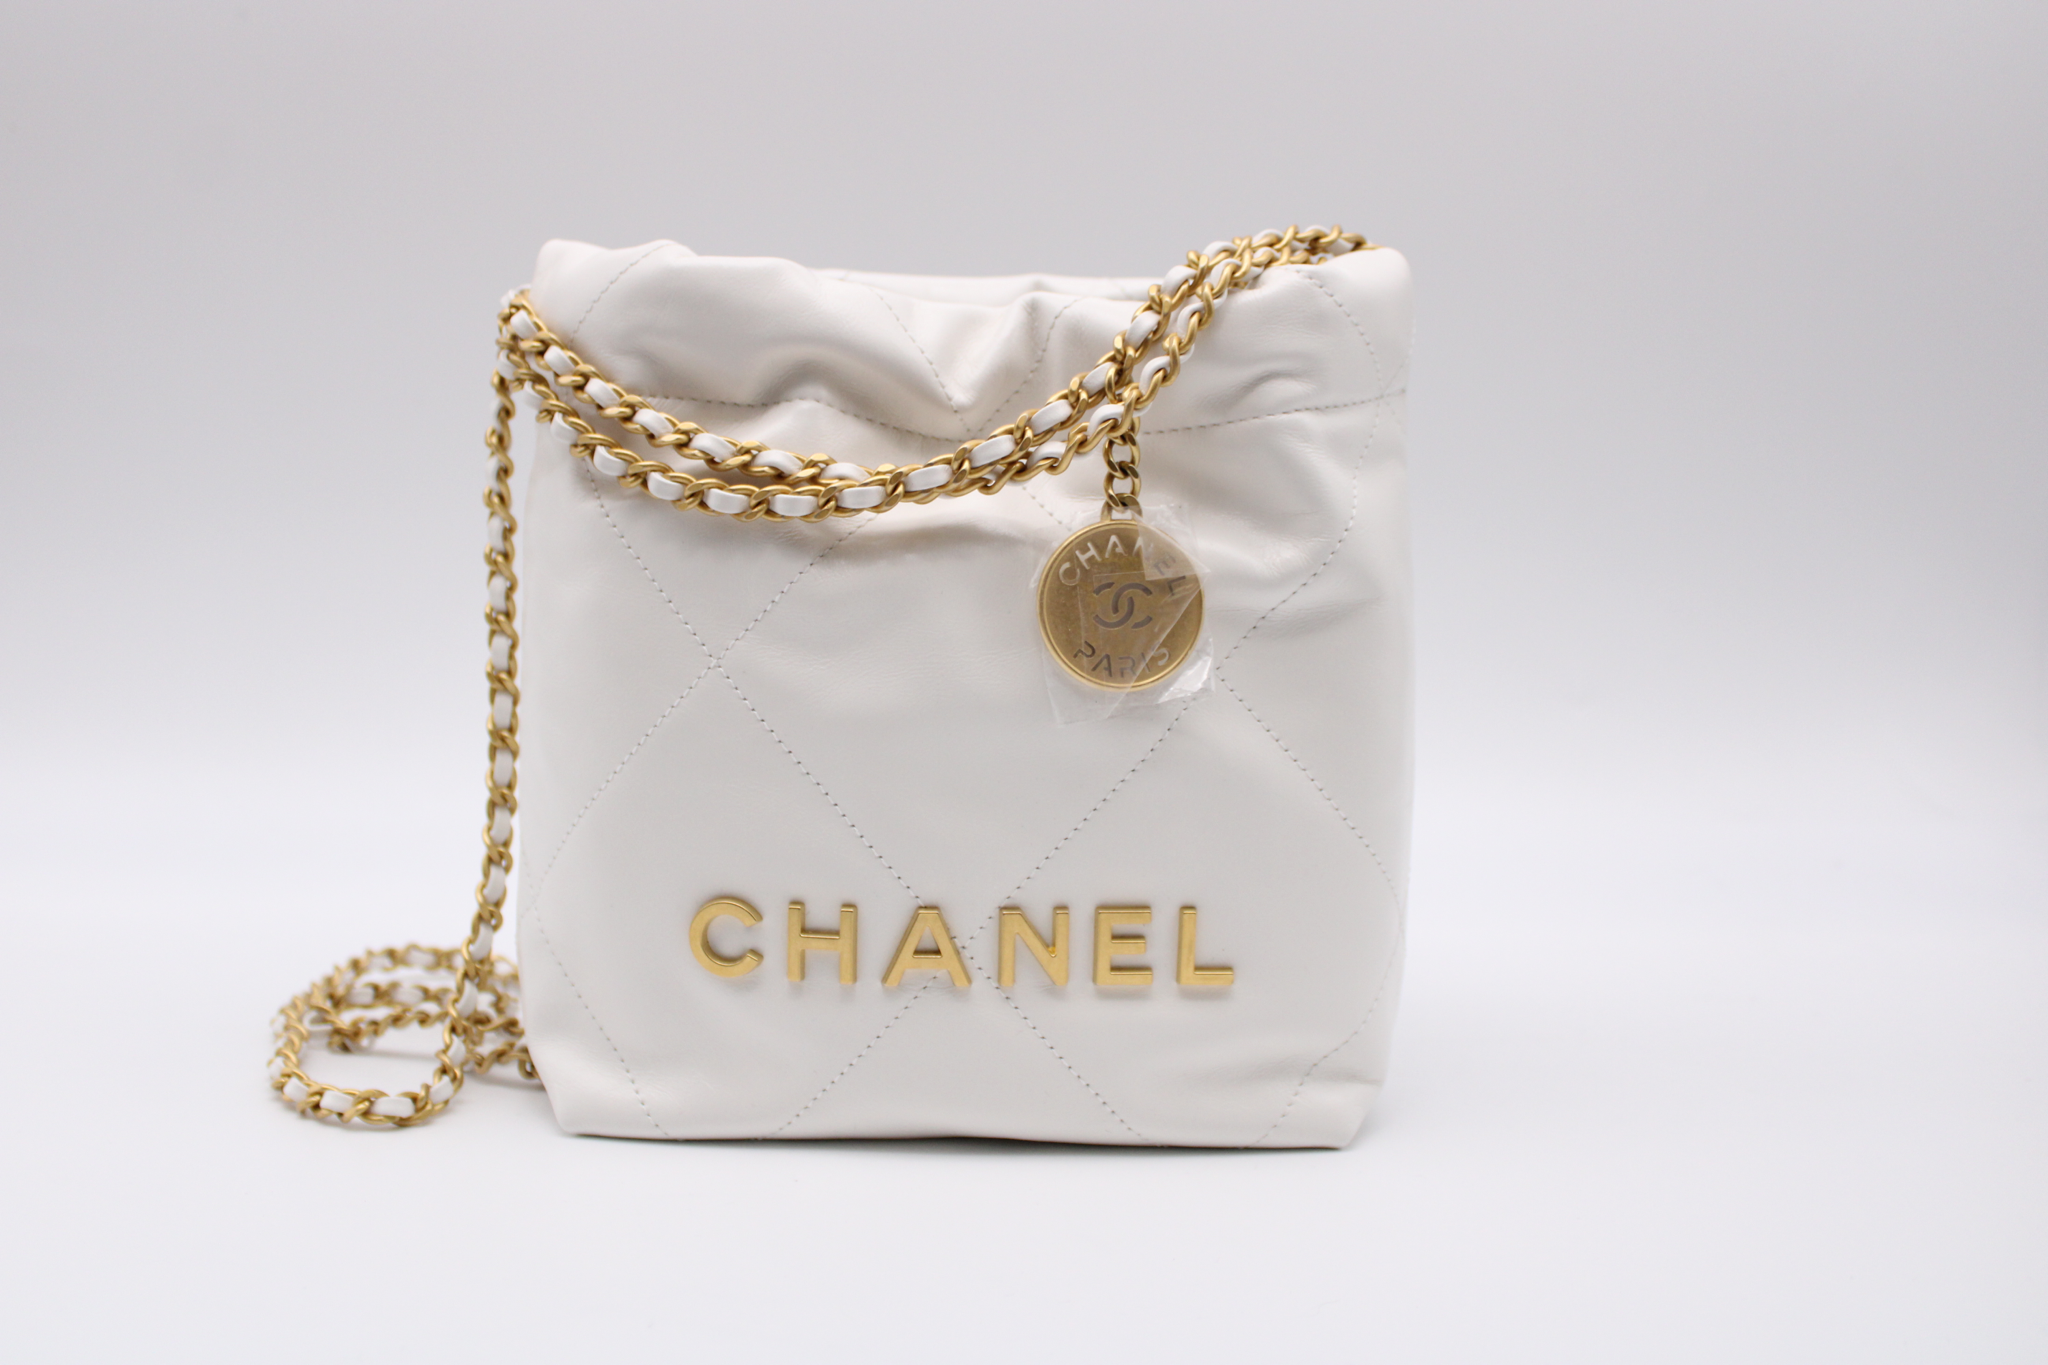 Chanel 22 Mini, White with Gold Hardware, New in Box MA001 - Julia Rose  Boston